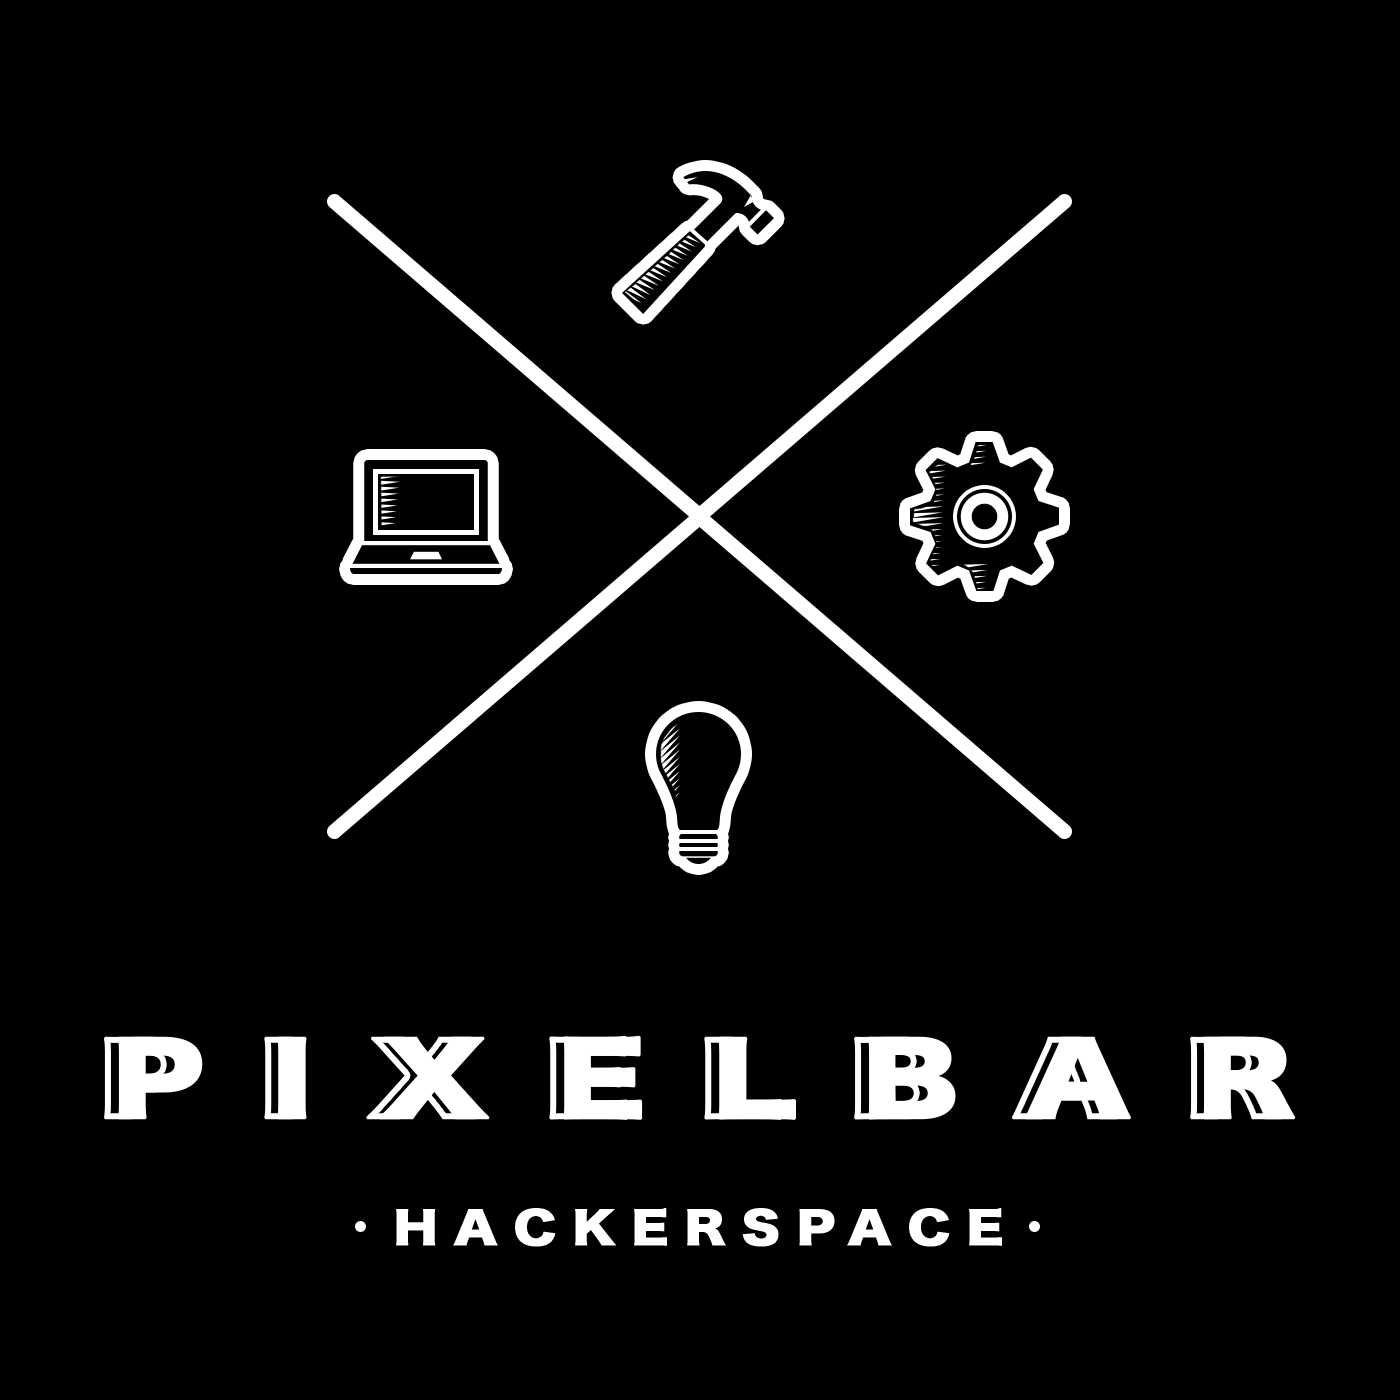 pixelbar.nl logo